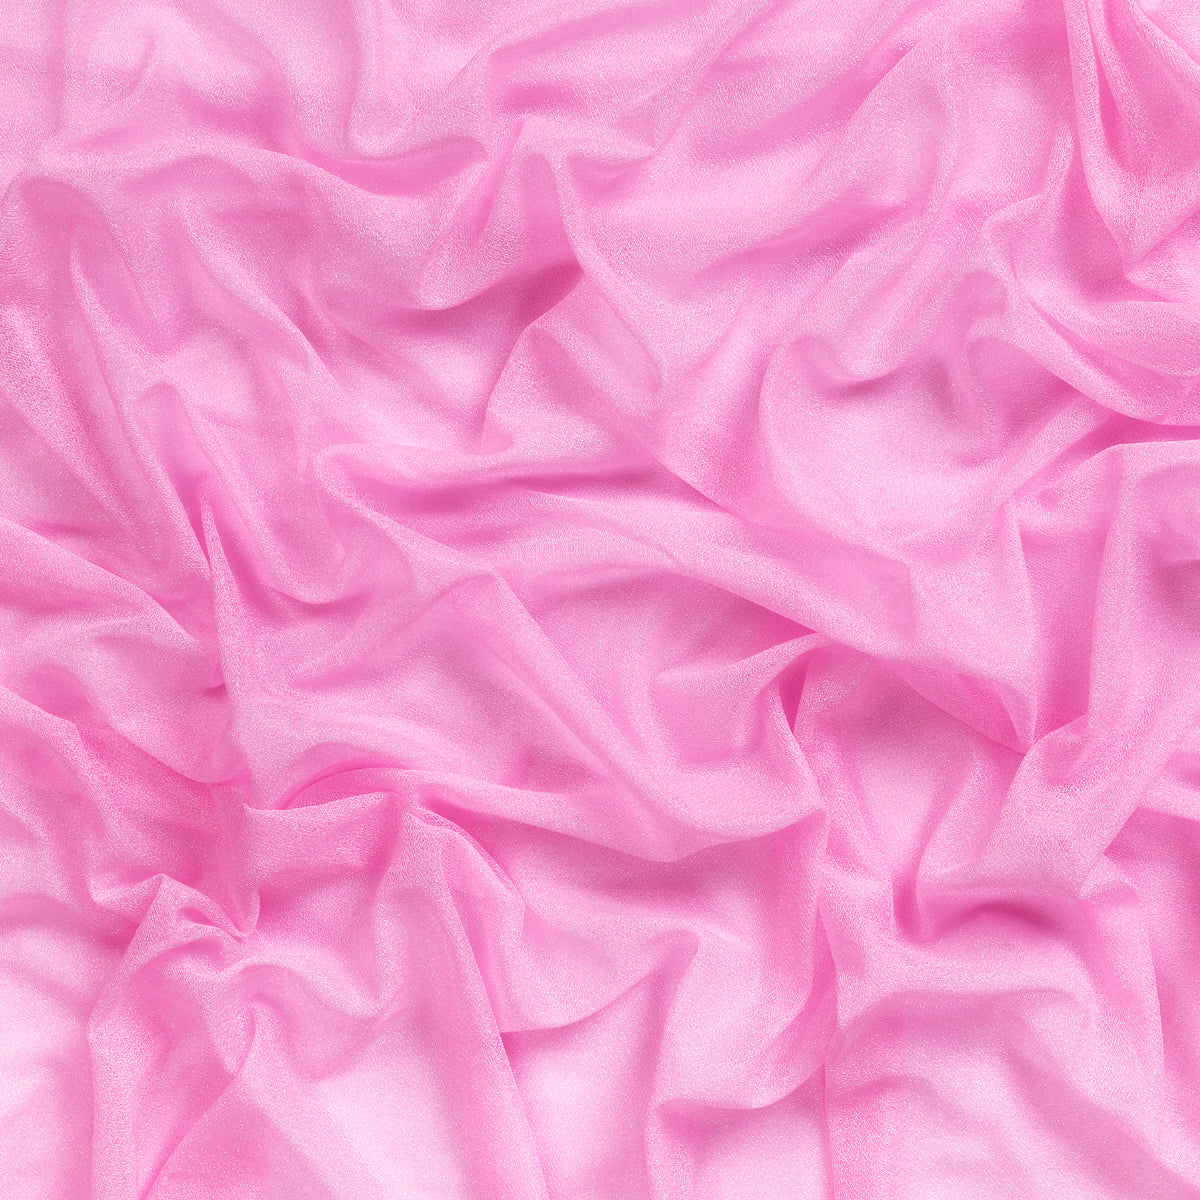 Bubblegum Pink,19ef5798-edc2-4dea-ab9f-59ca844496e1